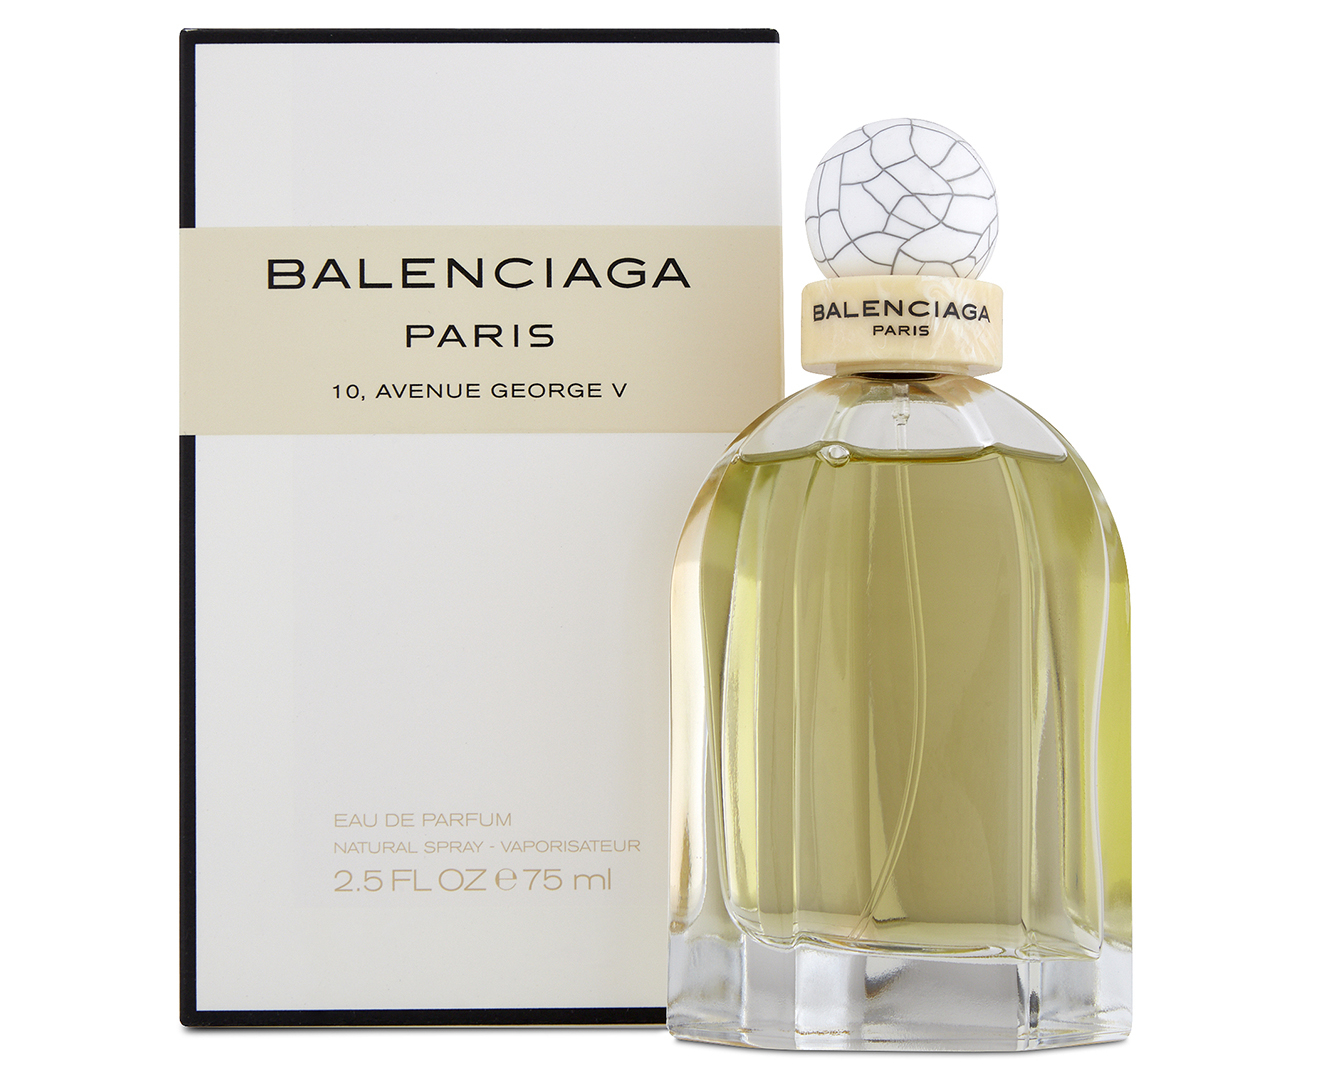 Chi tiết 79+ về balenciaga paris perfume australia